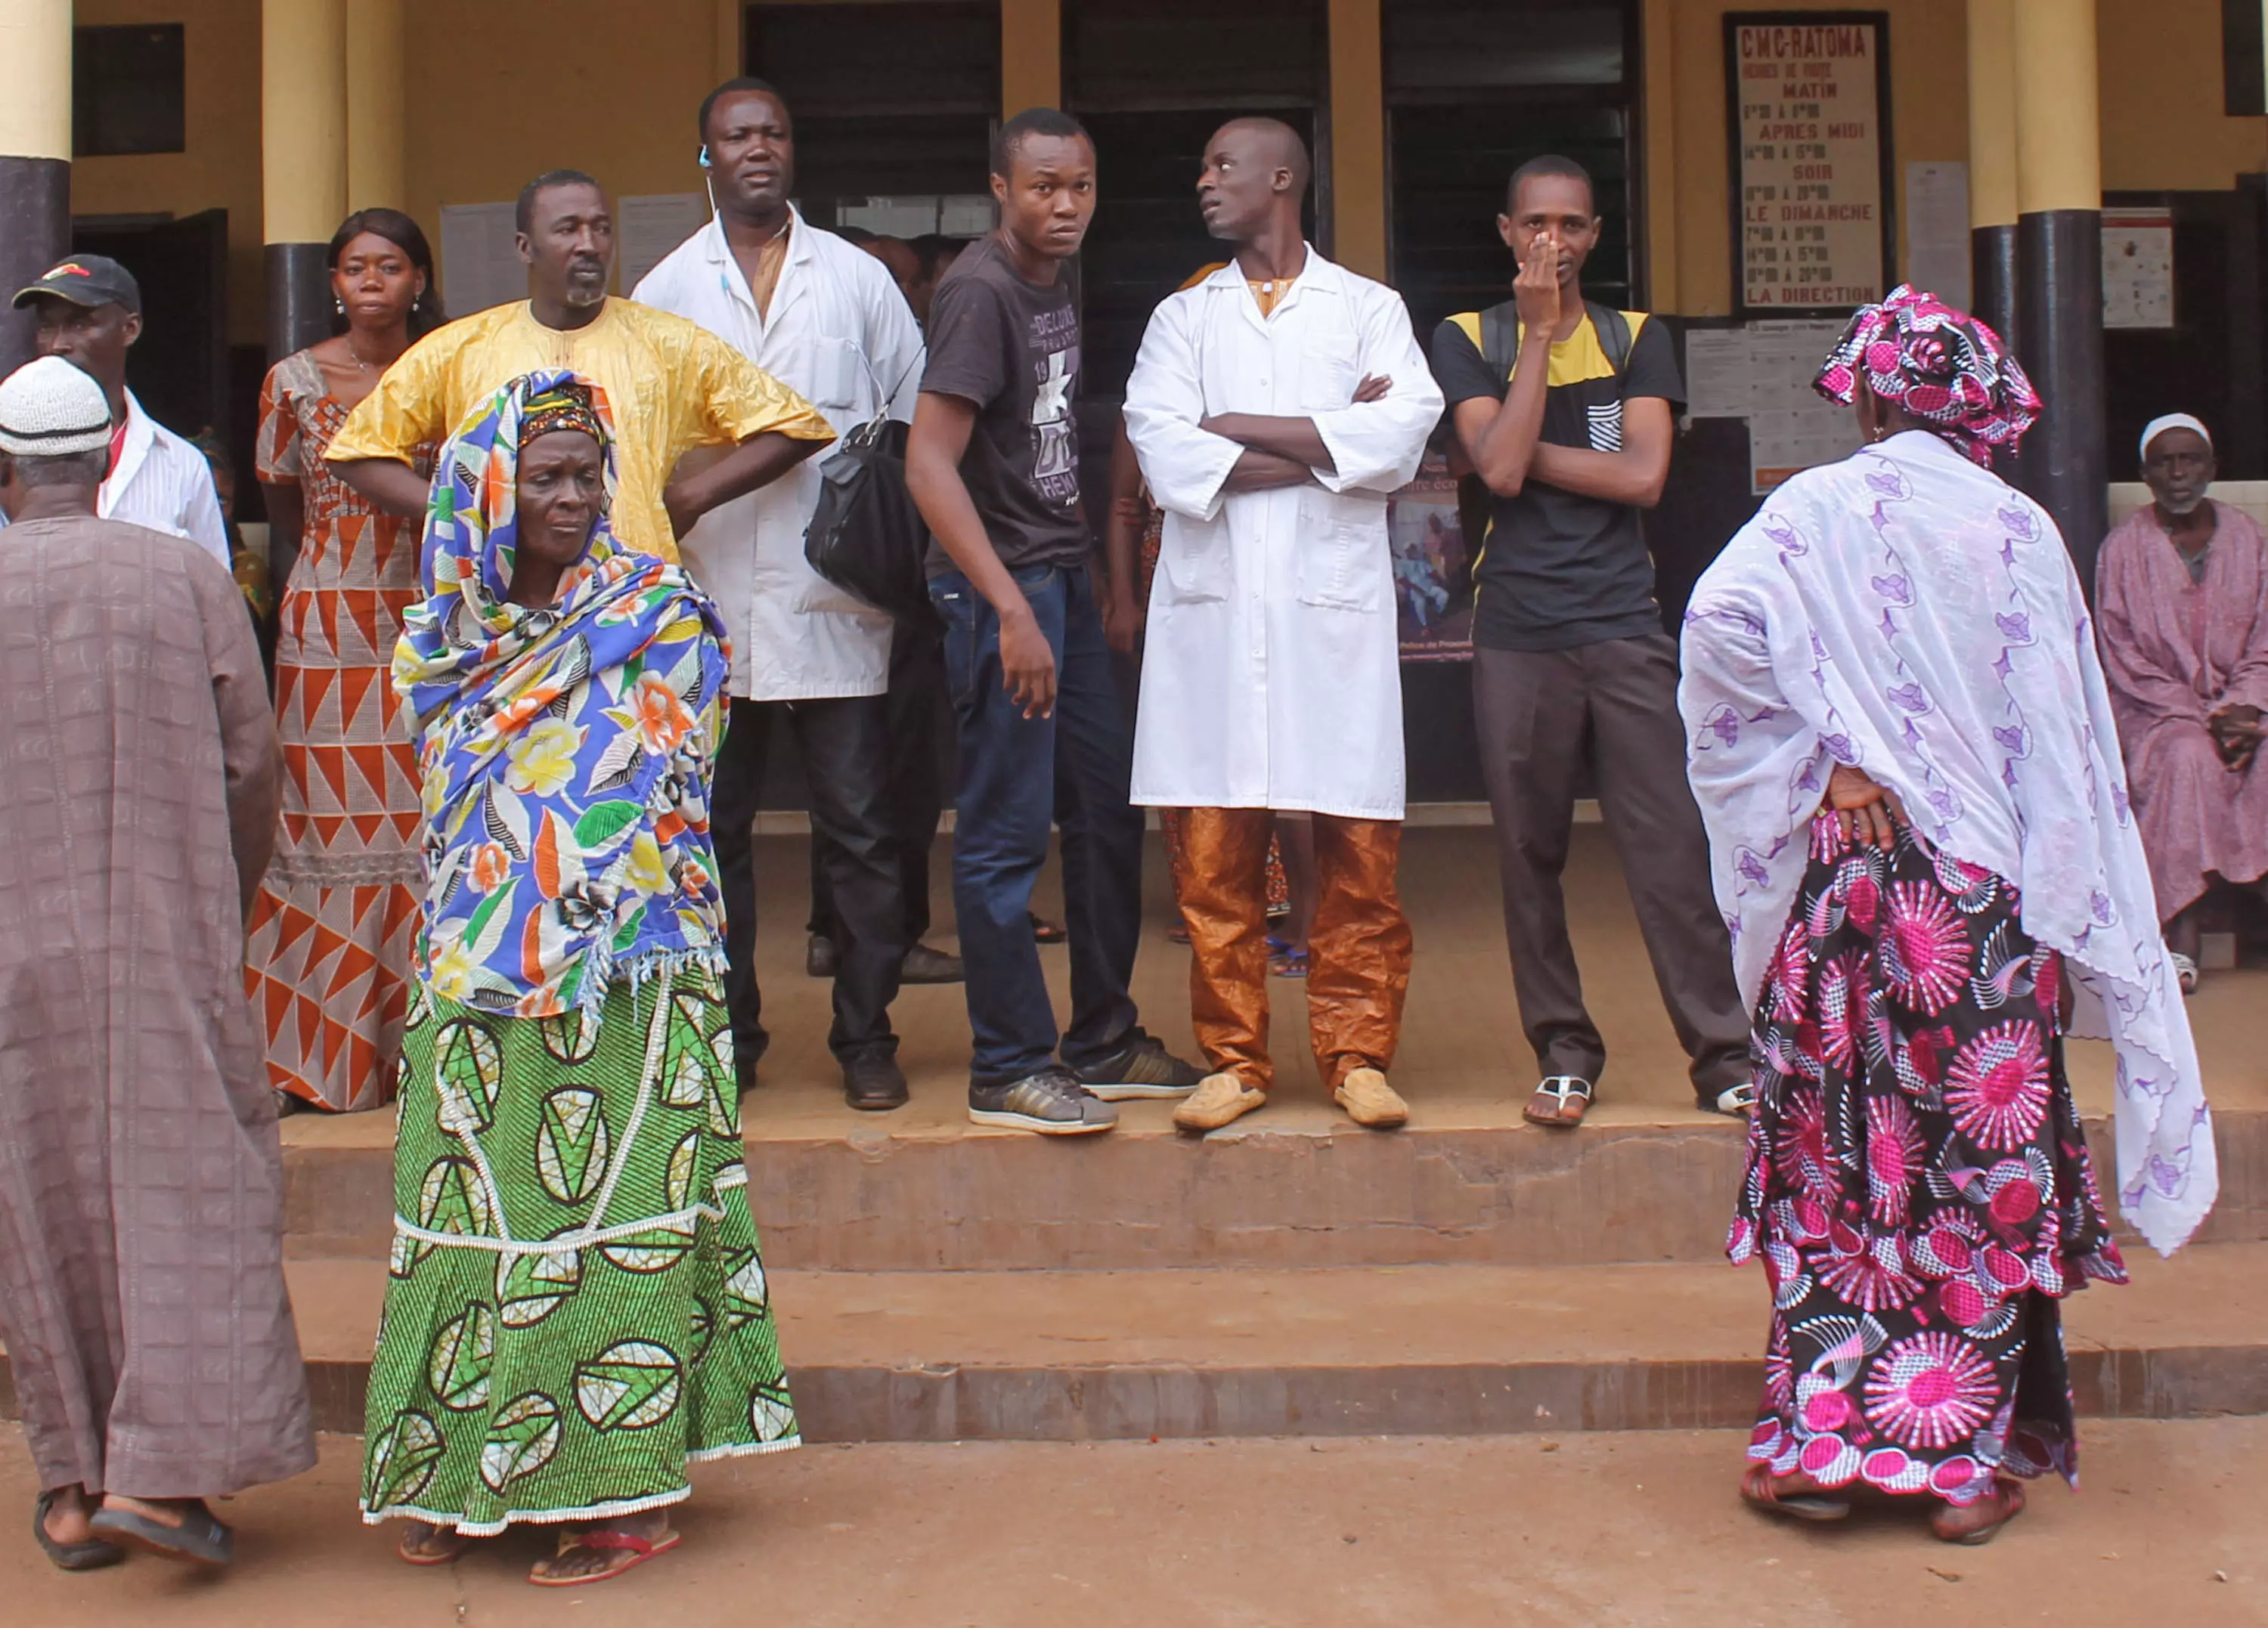 צרפת תפתח מרפאה נוספת. קרובי משפחה של חולי אבולה מחוץ למרפאה בקונארקי, בירת ליבריה